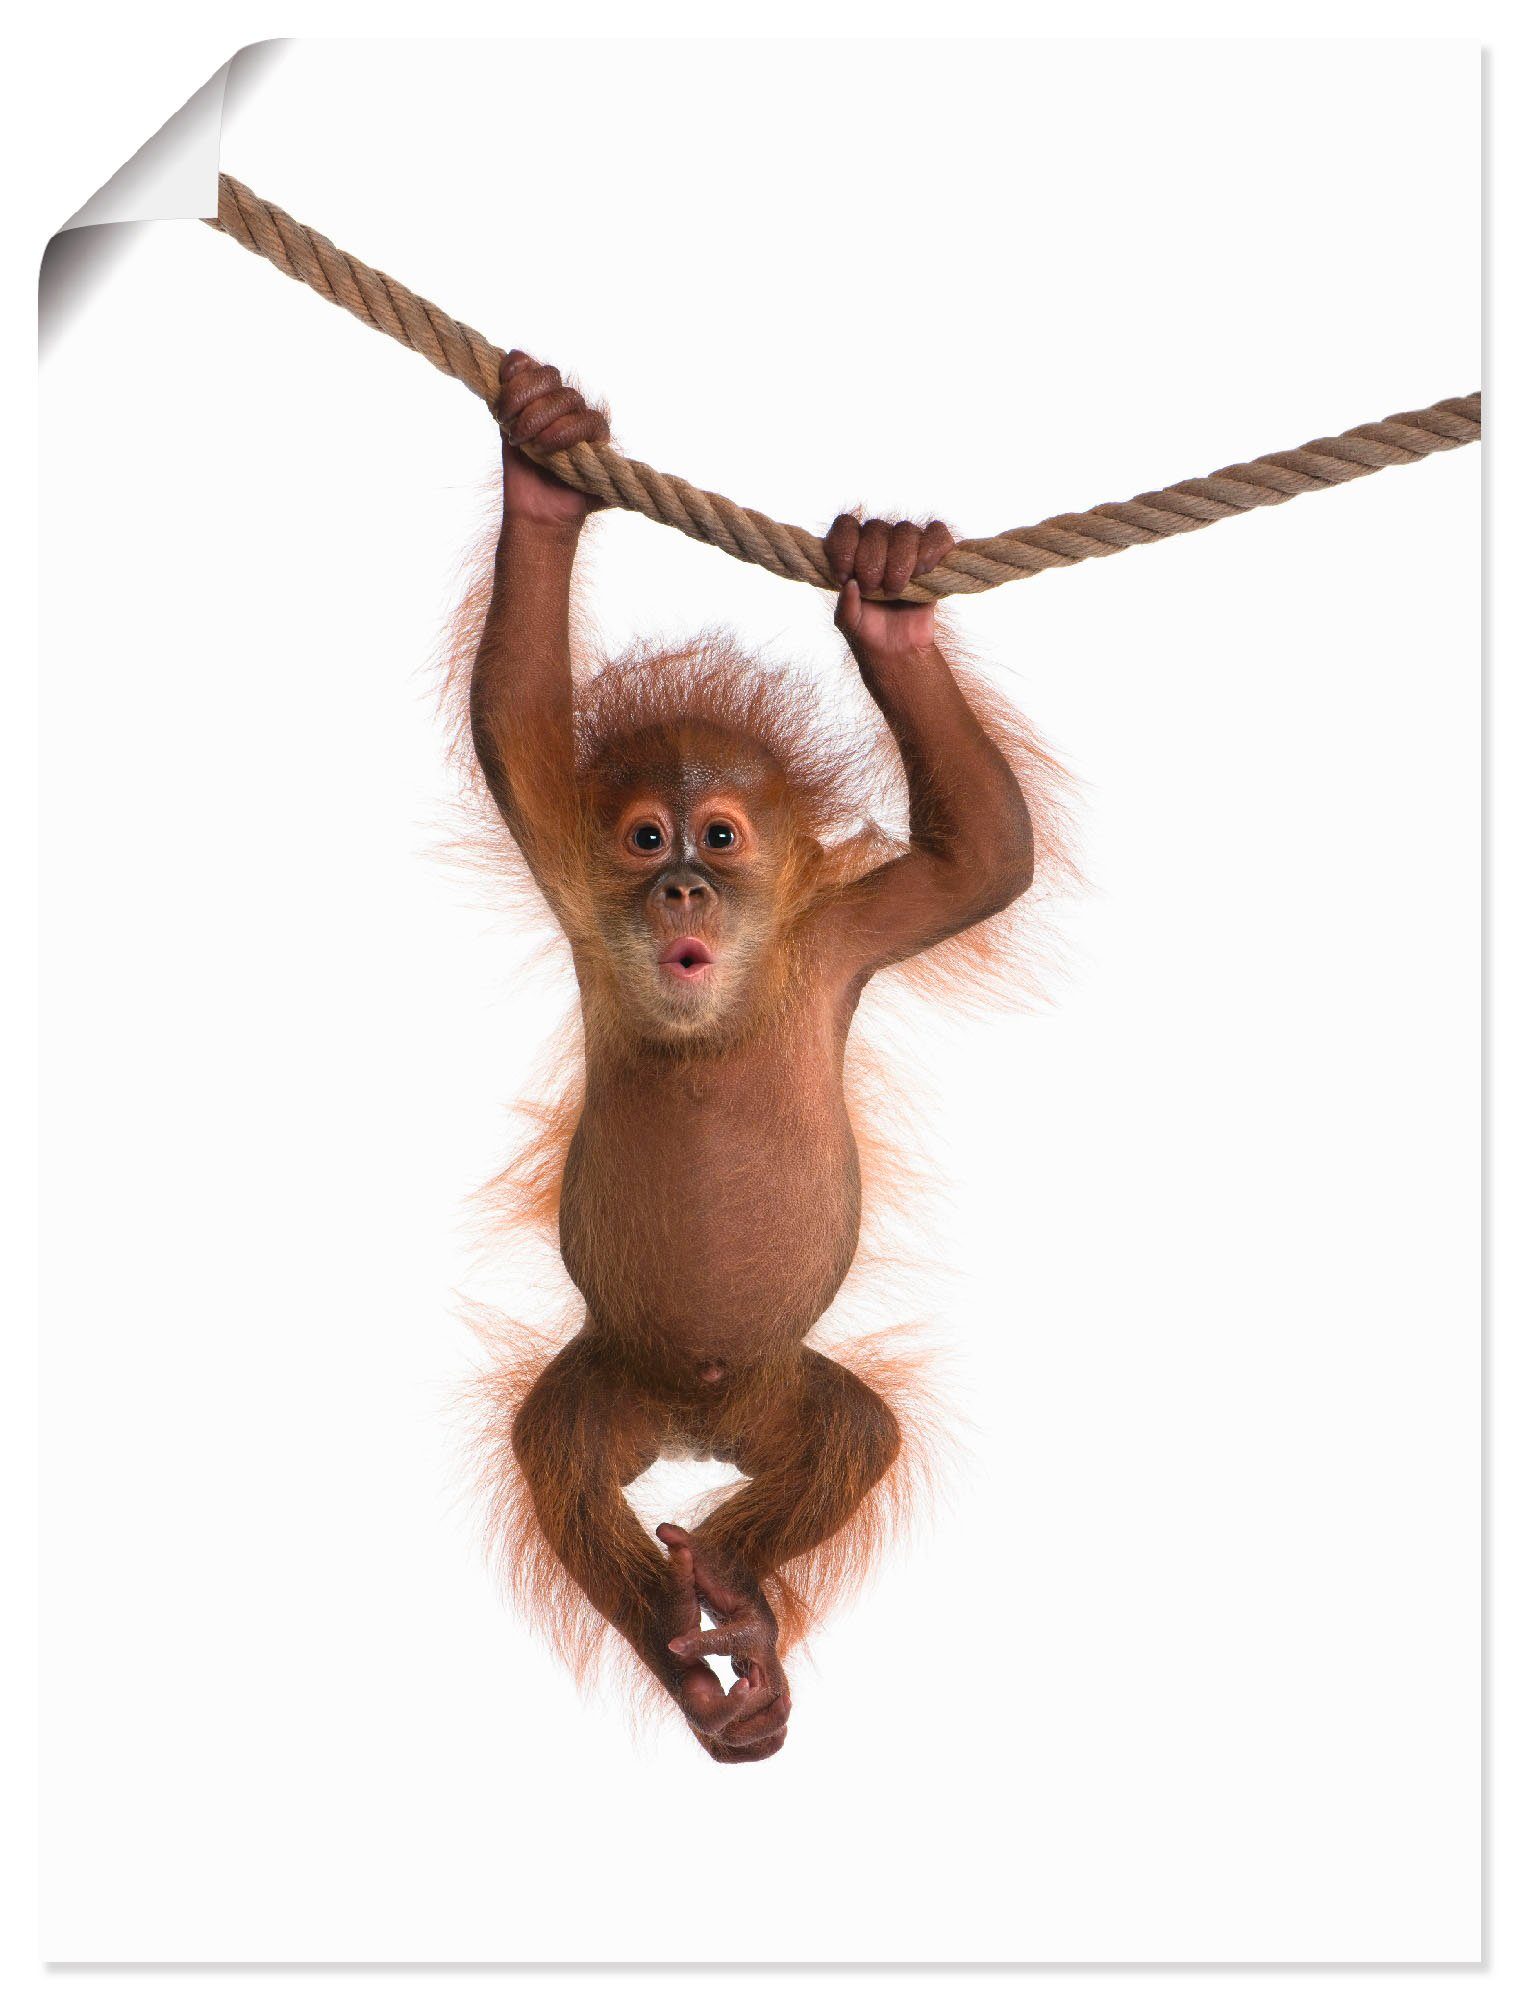 Artland Wandbild Baby Orang Utan hängt an Seil II, Wildtiere (1 St), als Alubild, Leinwandbild, Wandaufkleber oder Poster in versch. Größen | Poster